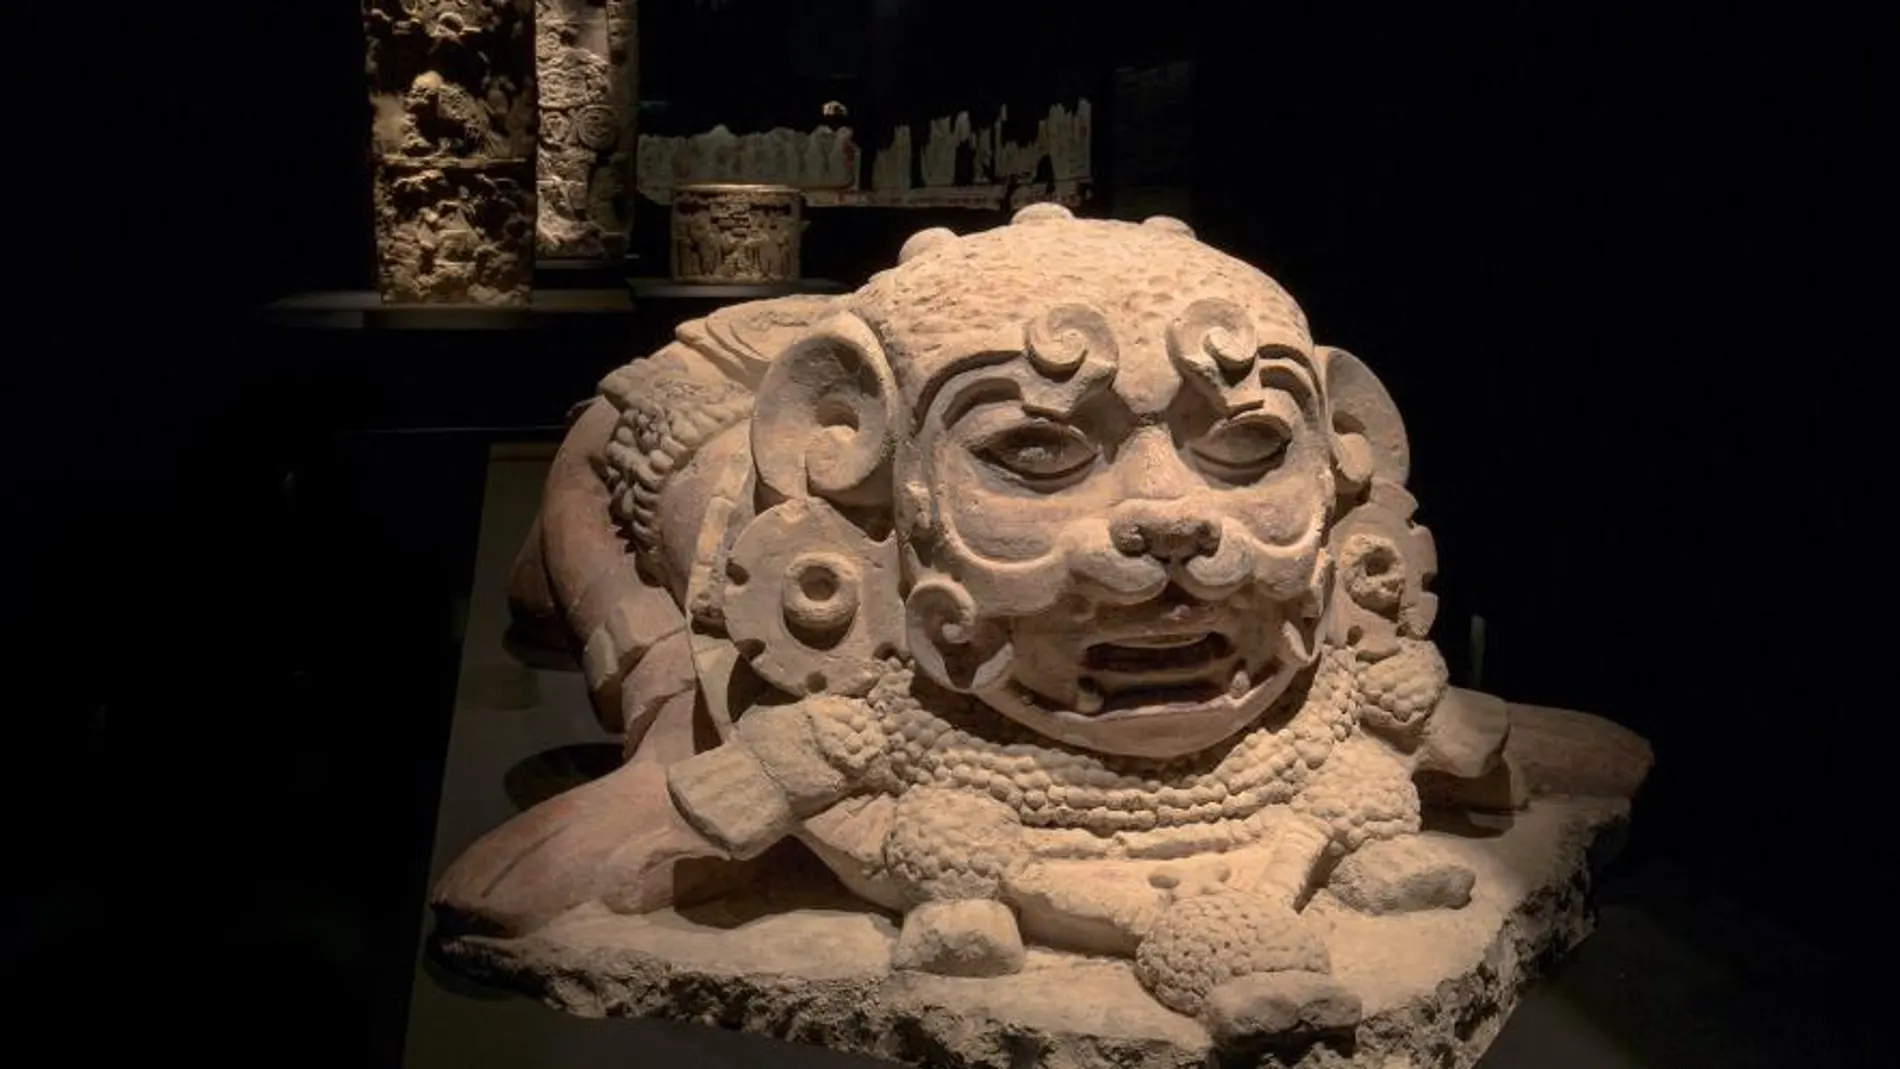 Uno de los objetos mayas de una civilización sorprendente que se exhiben en el Museo alicantino MARQ que del 2 al 7 de enero podrá visitarse gratuitamente y que ha sido contemplada por miles de personas